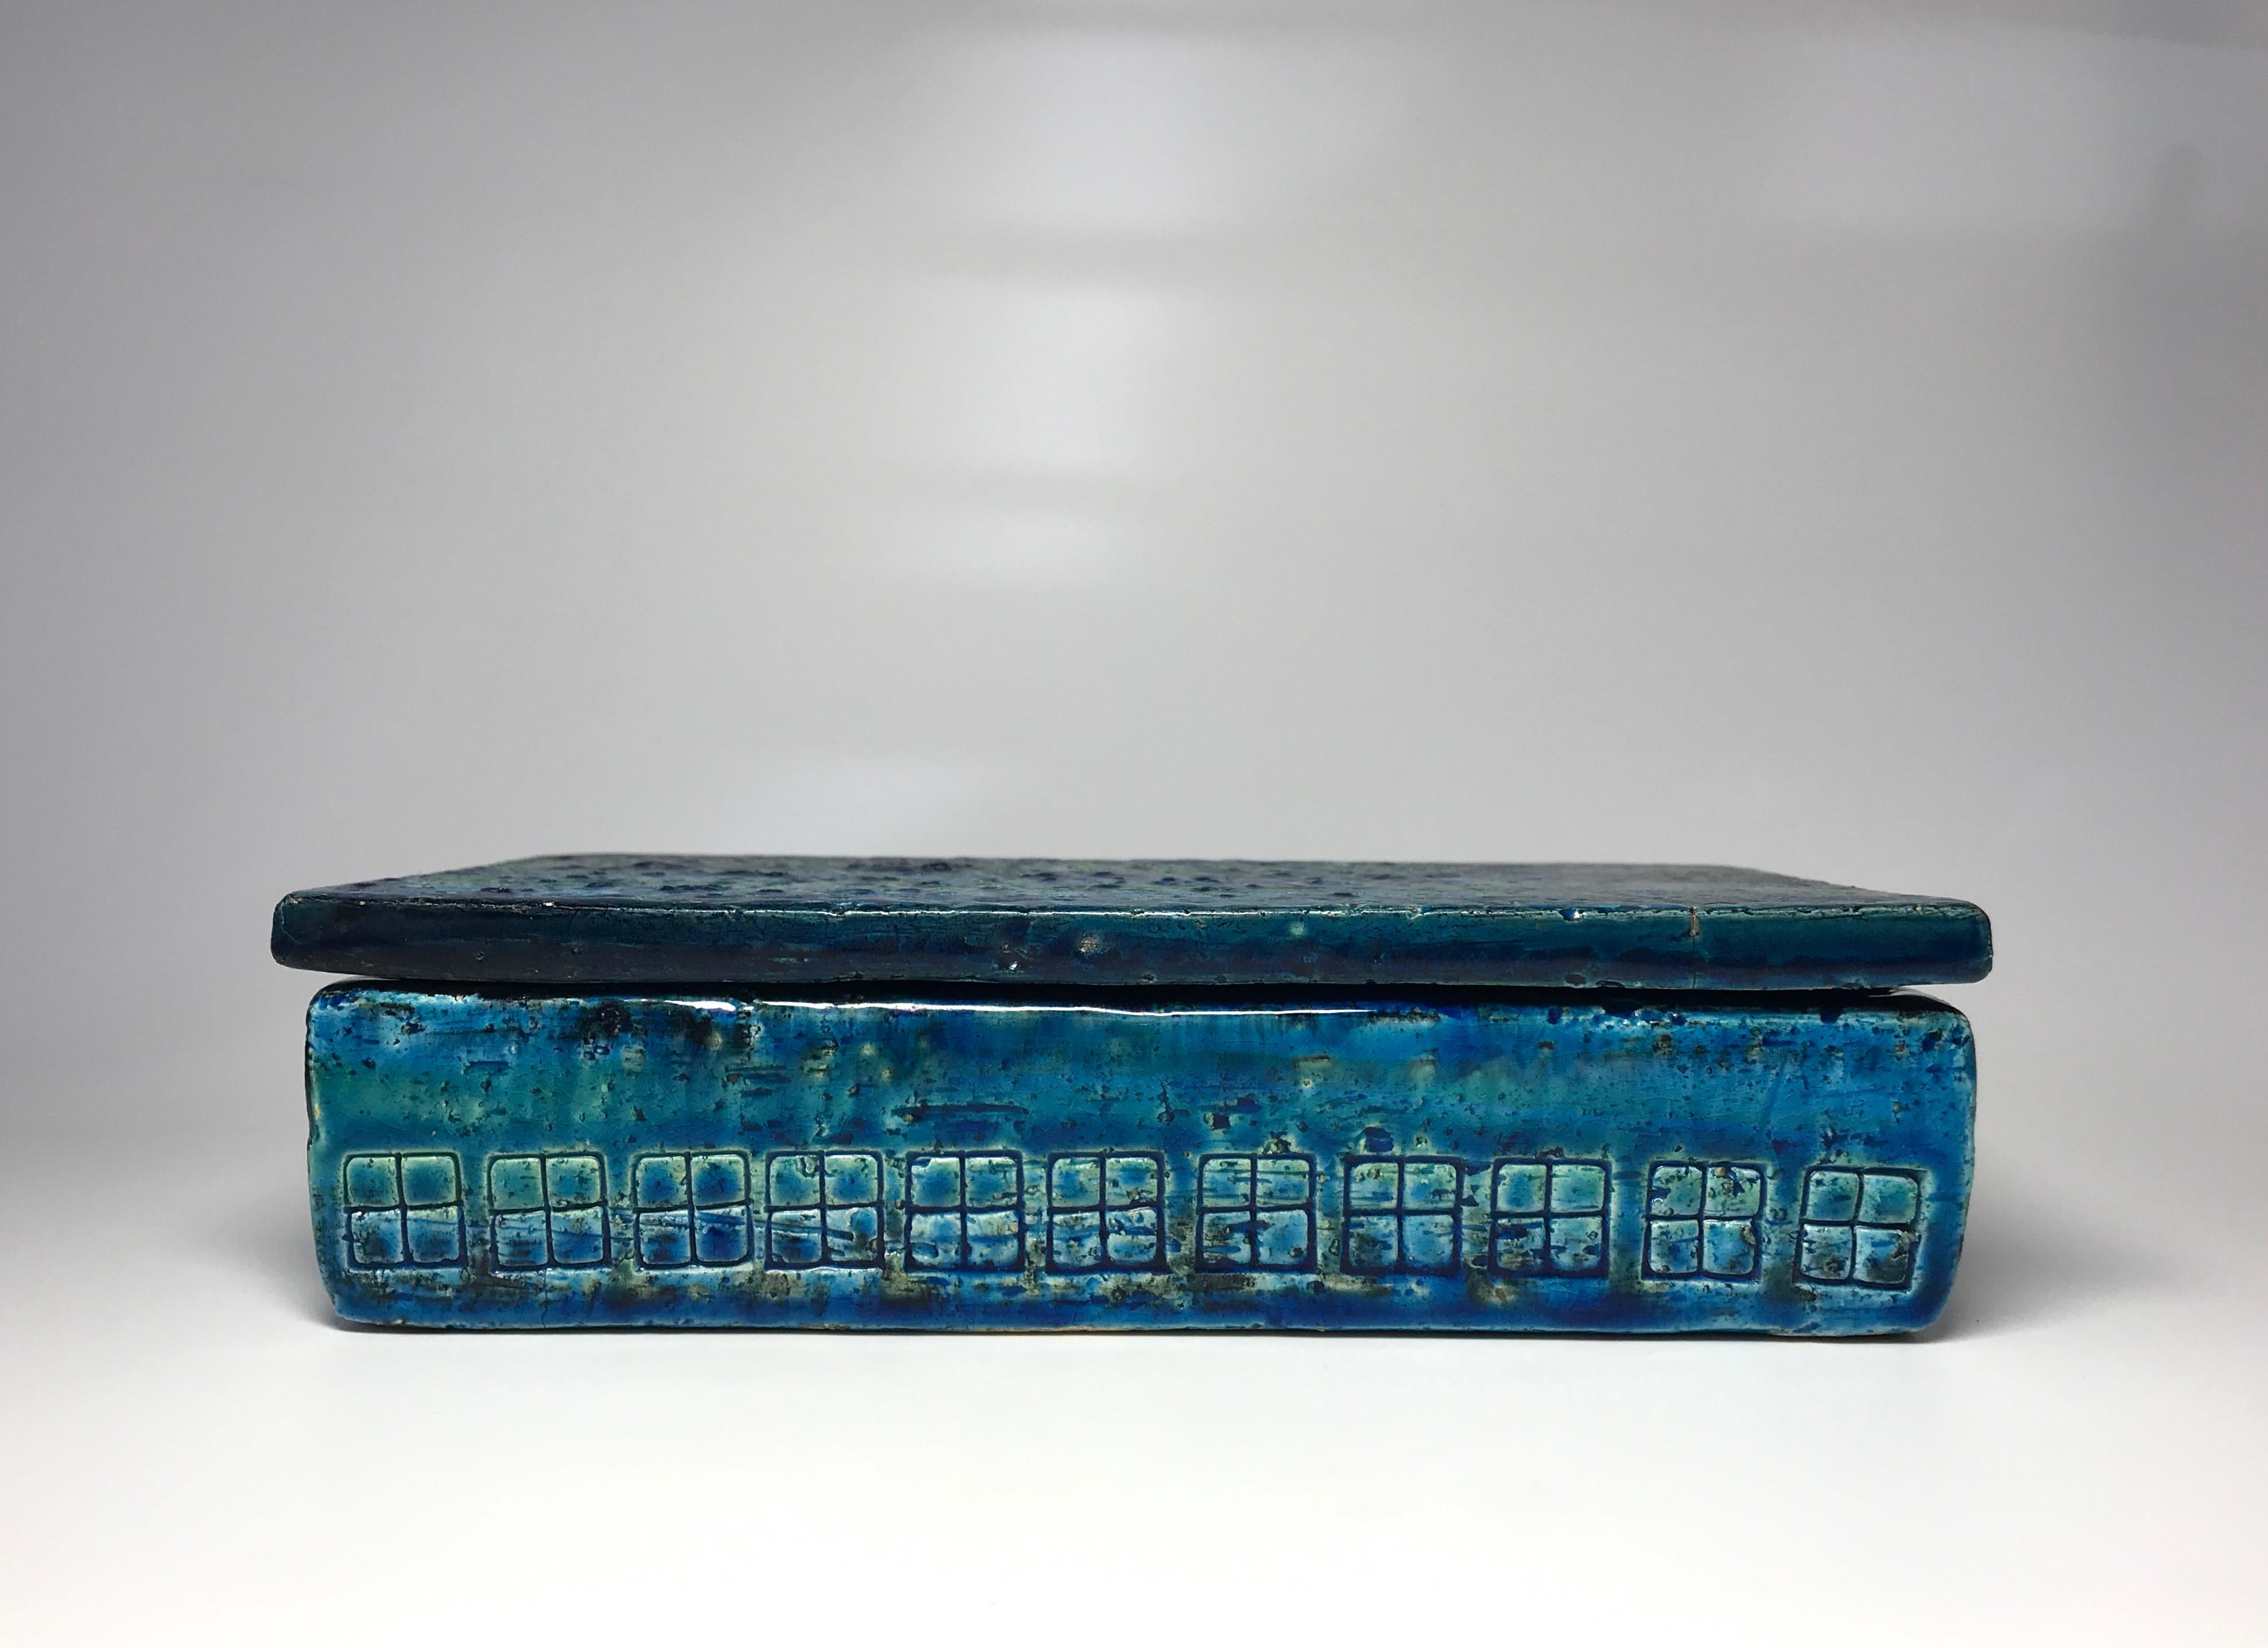 Bitossi Rimini blau-grün gestreifte, längliche Keramikdose mit Deckel und handgeschnittenem Dekor. Ein schönes Beispiel für italienische Handwerkskunst,
ca. 1960er Jahre
Signiert Italien auf dem Boden der Schachtel
In gutem Zustand. Kleine